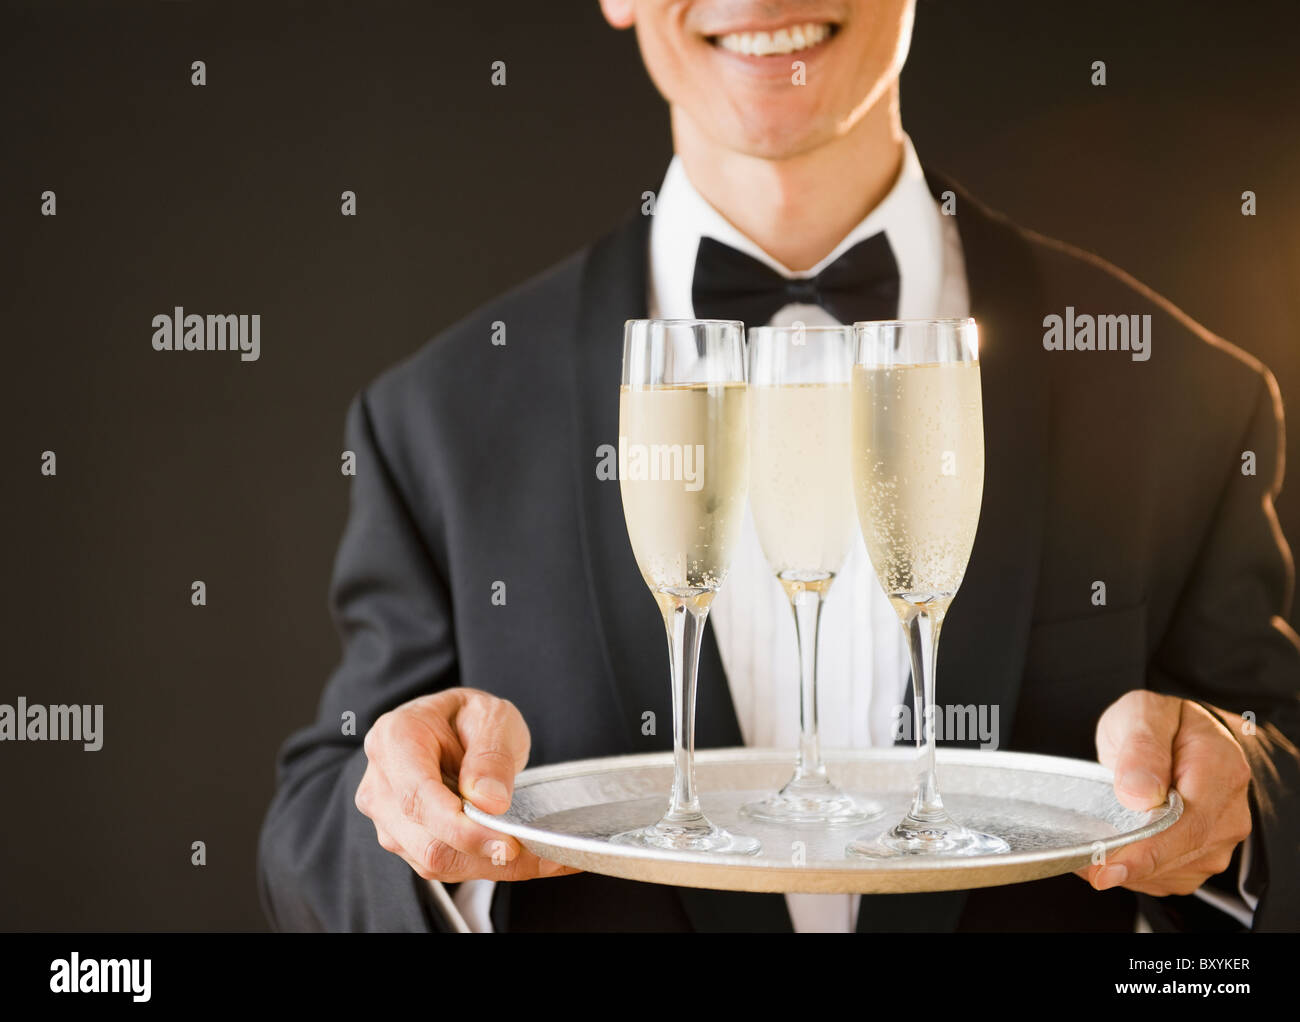 Kellner tragen Fliege und Holding-Tablett mit Champagner-Flöten, Studio gedreht Stockfoto